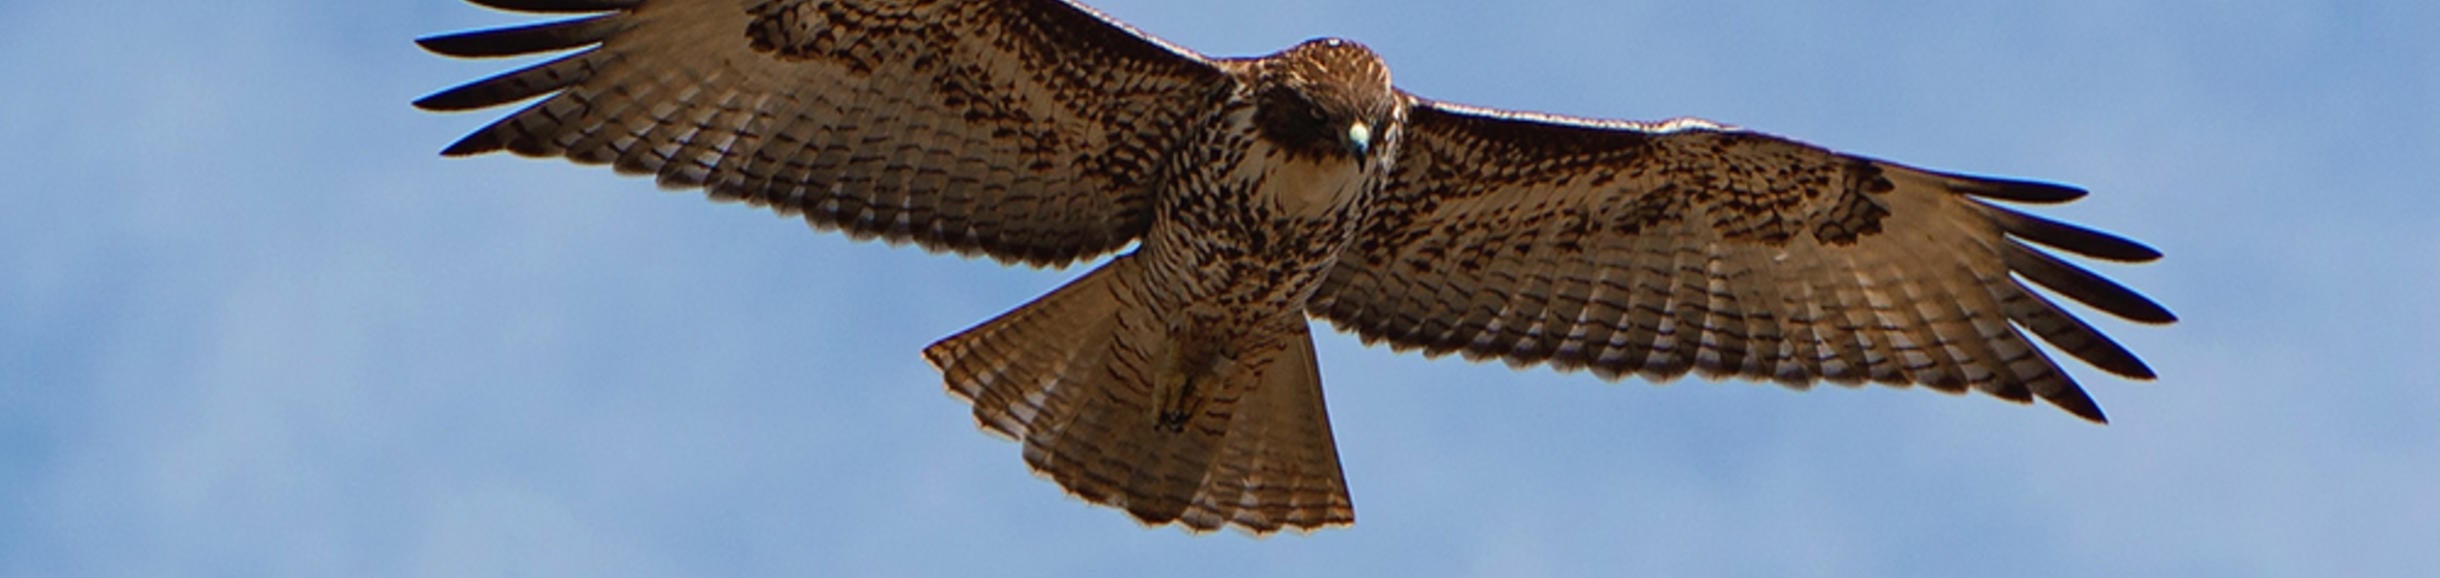 hawk flying (c) Antonio Gabola unsplash